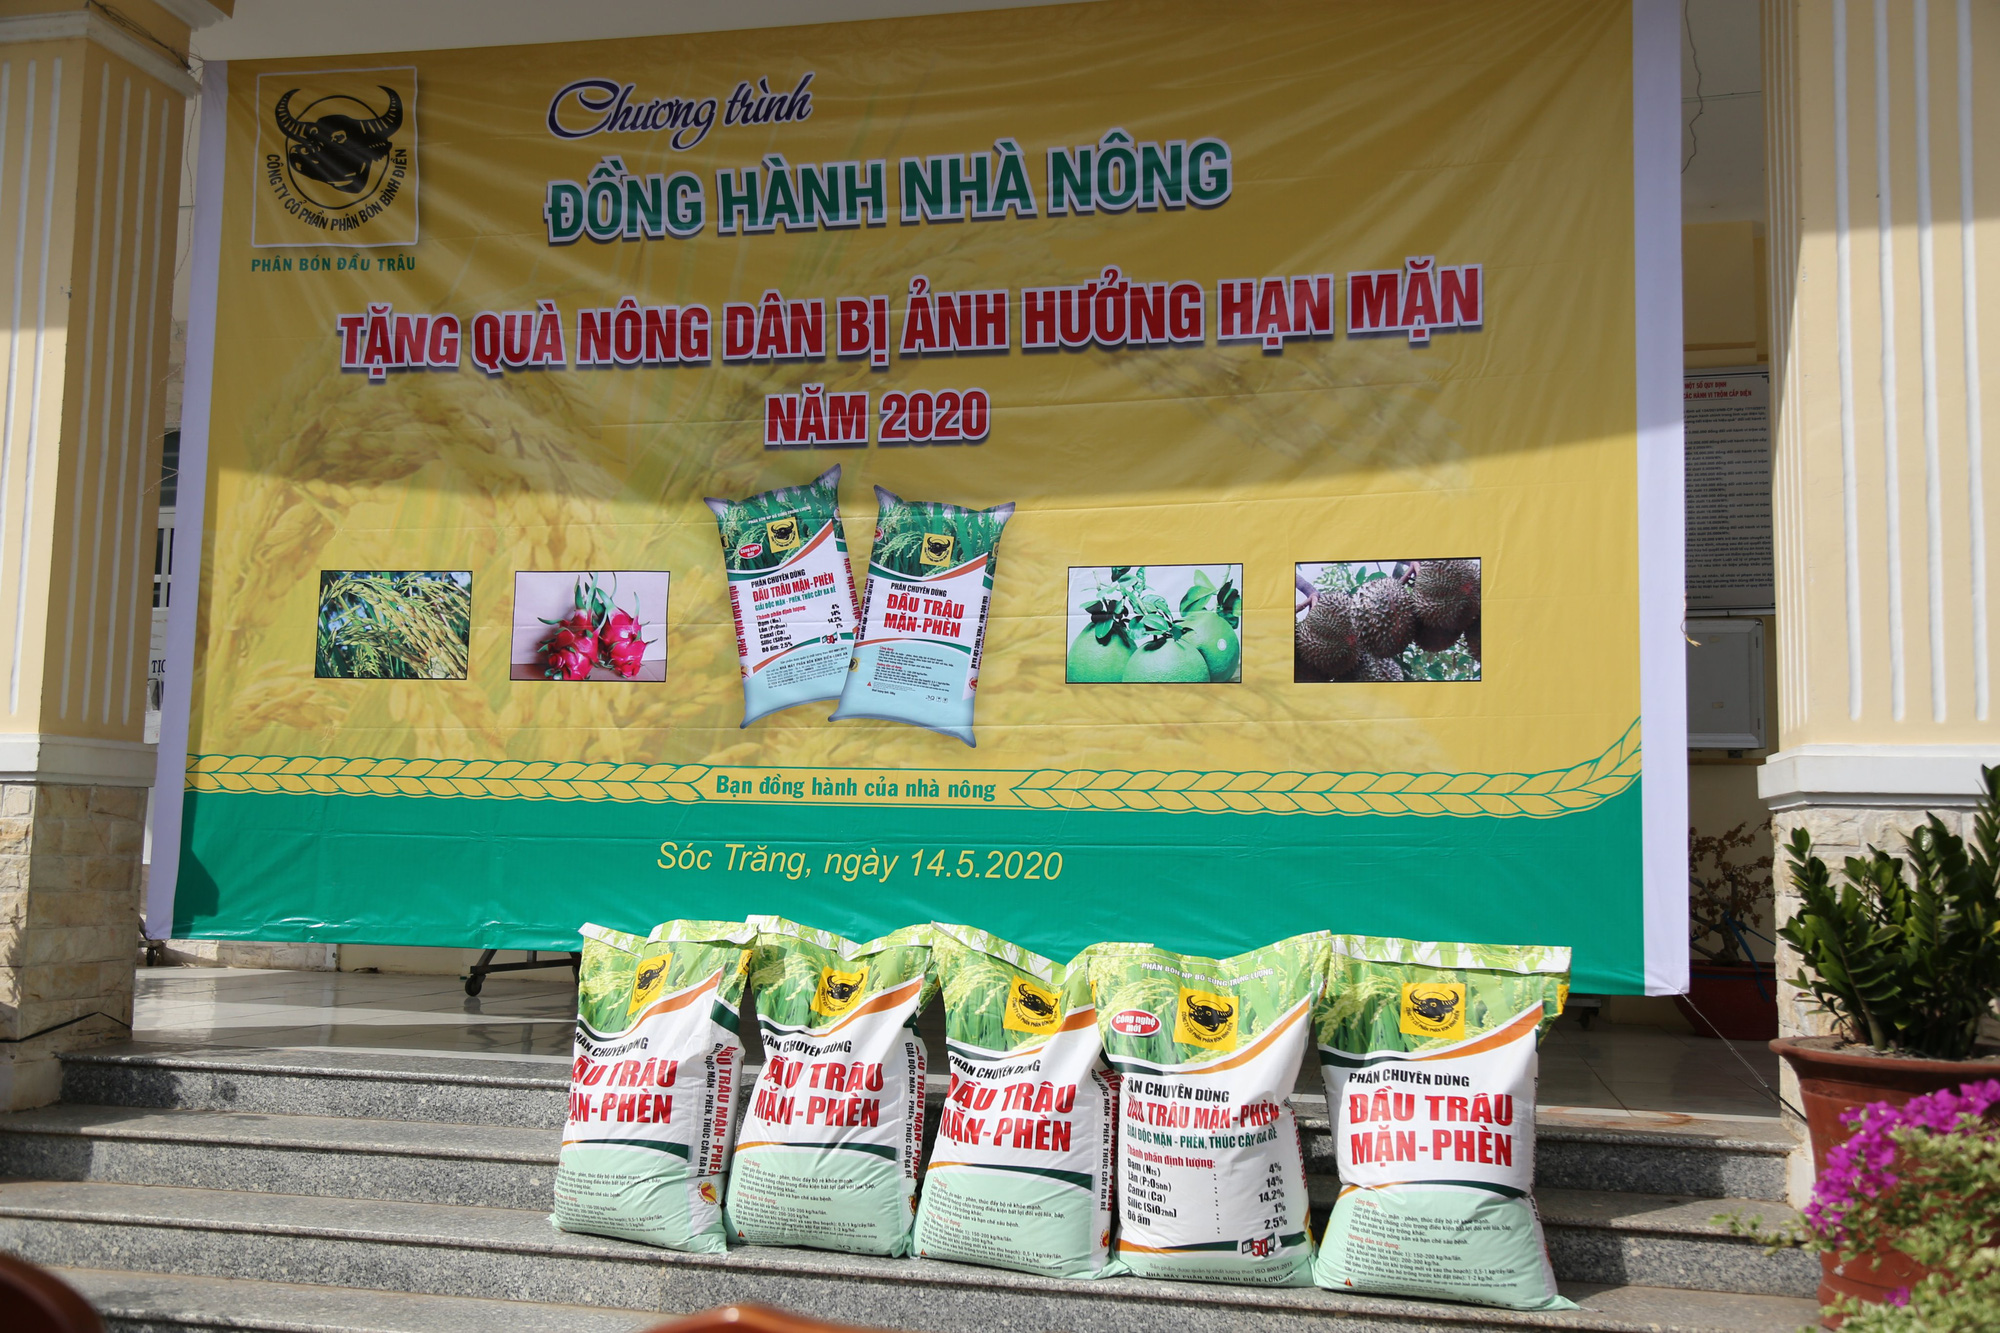 Phân bón Bình Điền hỗ trợ nông dân ĐBSCL vượt qua hạn mặn - Ảnh 3.